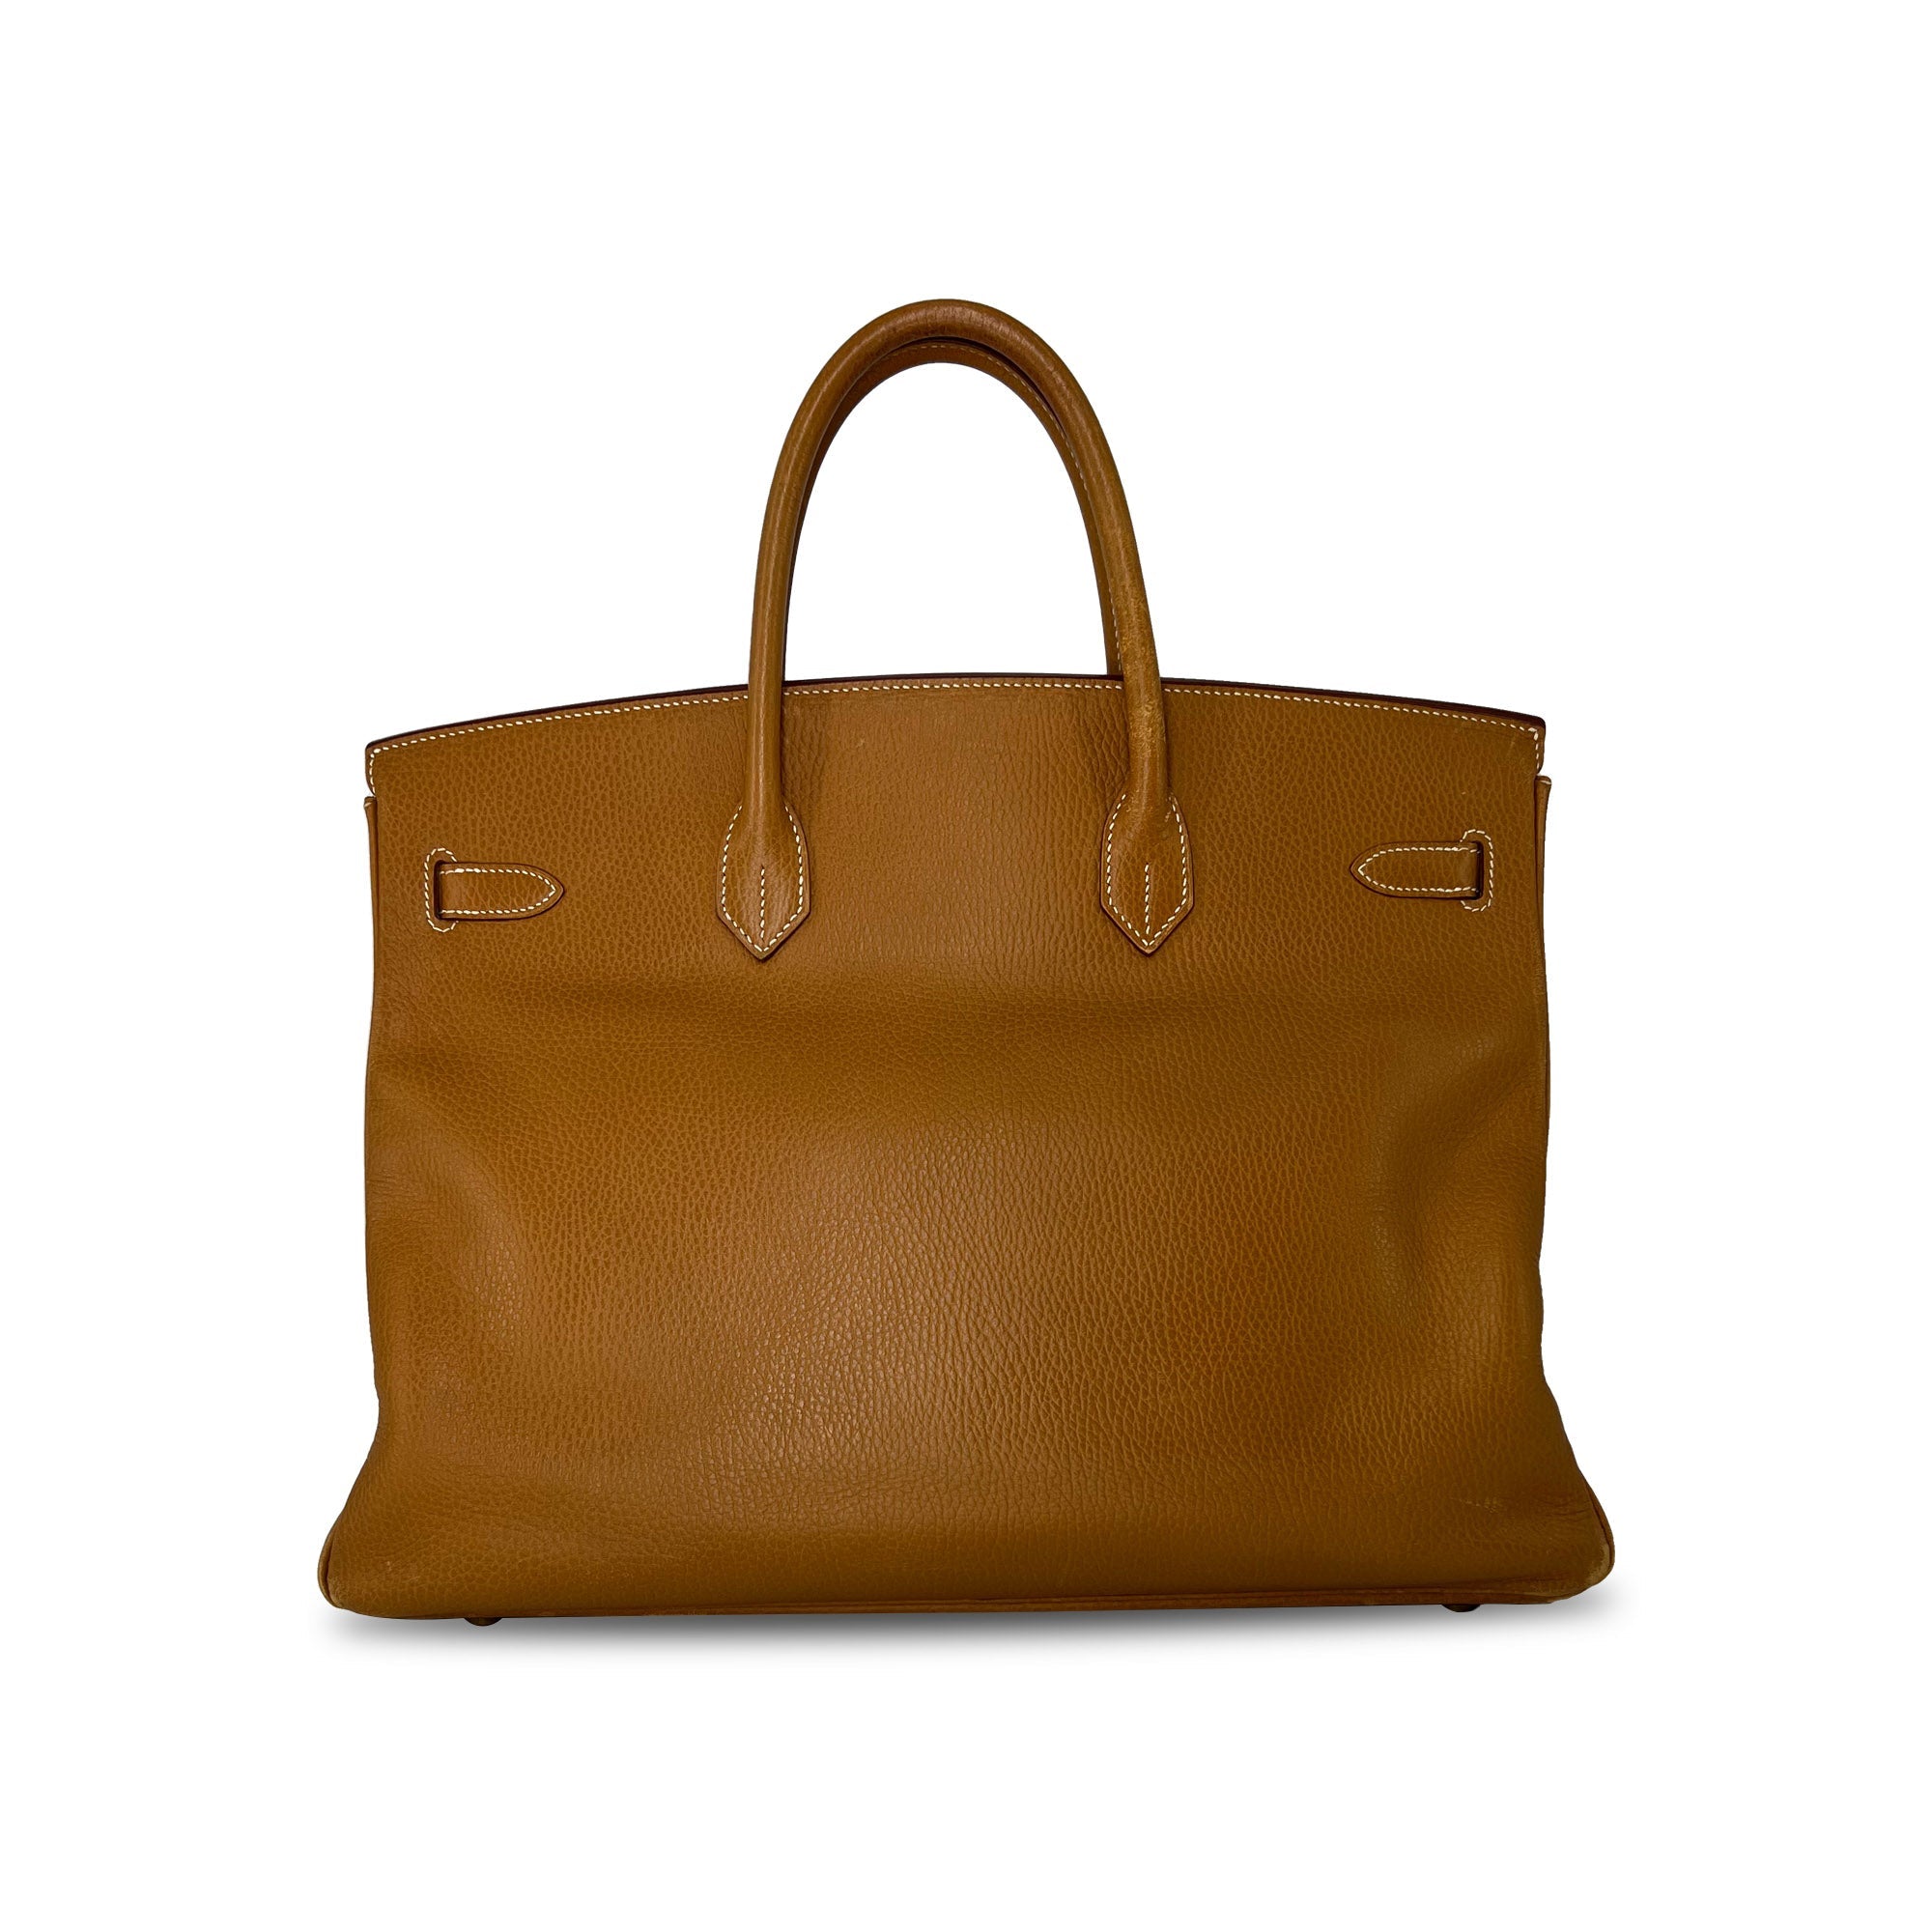 Top Quality Vintage Hermes Birkin B40 GHW Clemence Leather designer bag